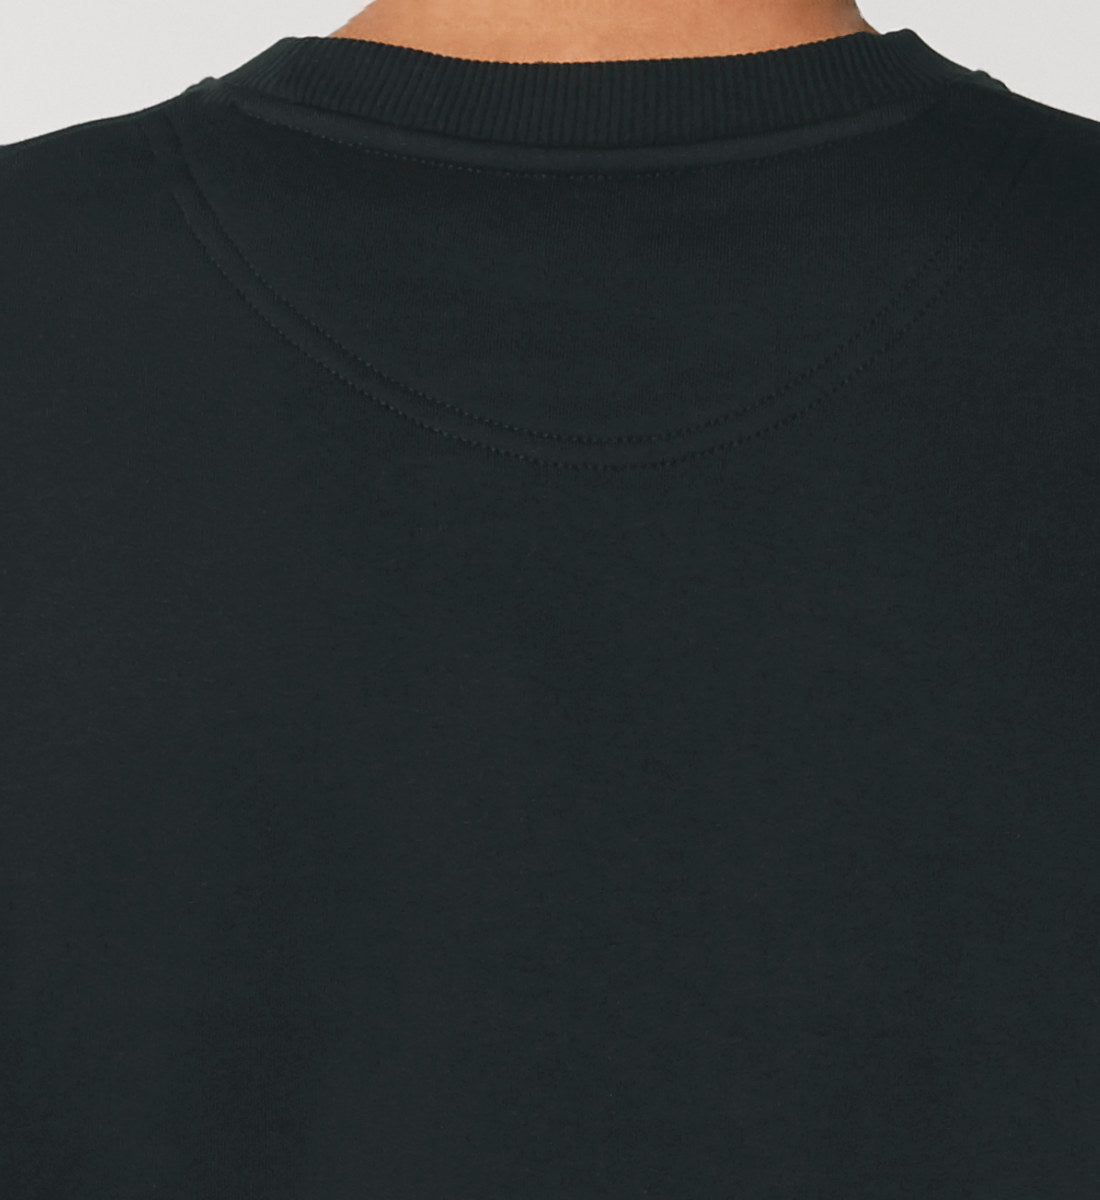 Schwarzes Sweatshirt Unisex für Frauen und Männer bedruckt mit dem Design der Roger Rockawoo Kollektion HipHop check your brain